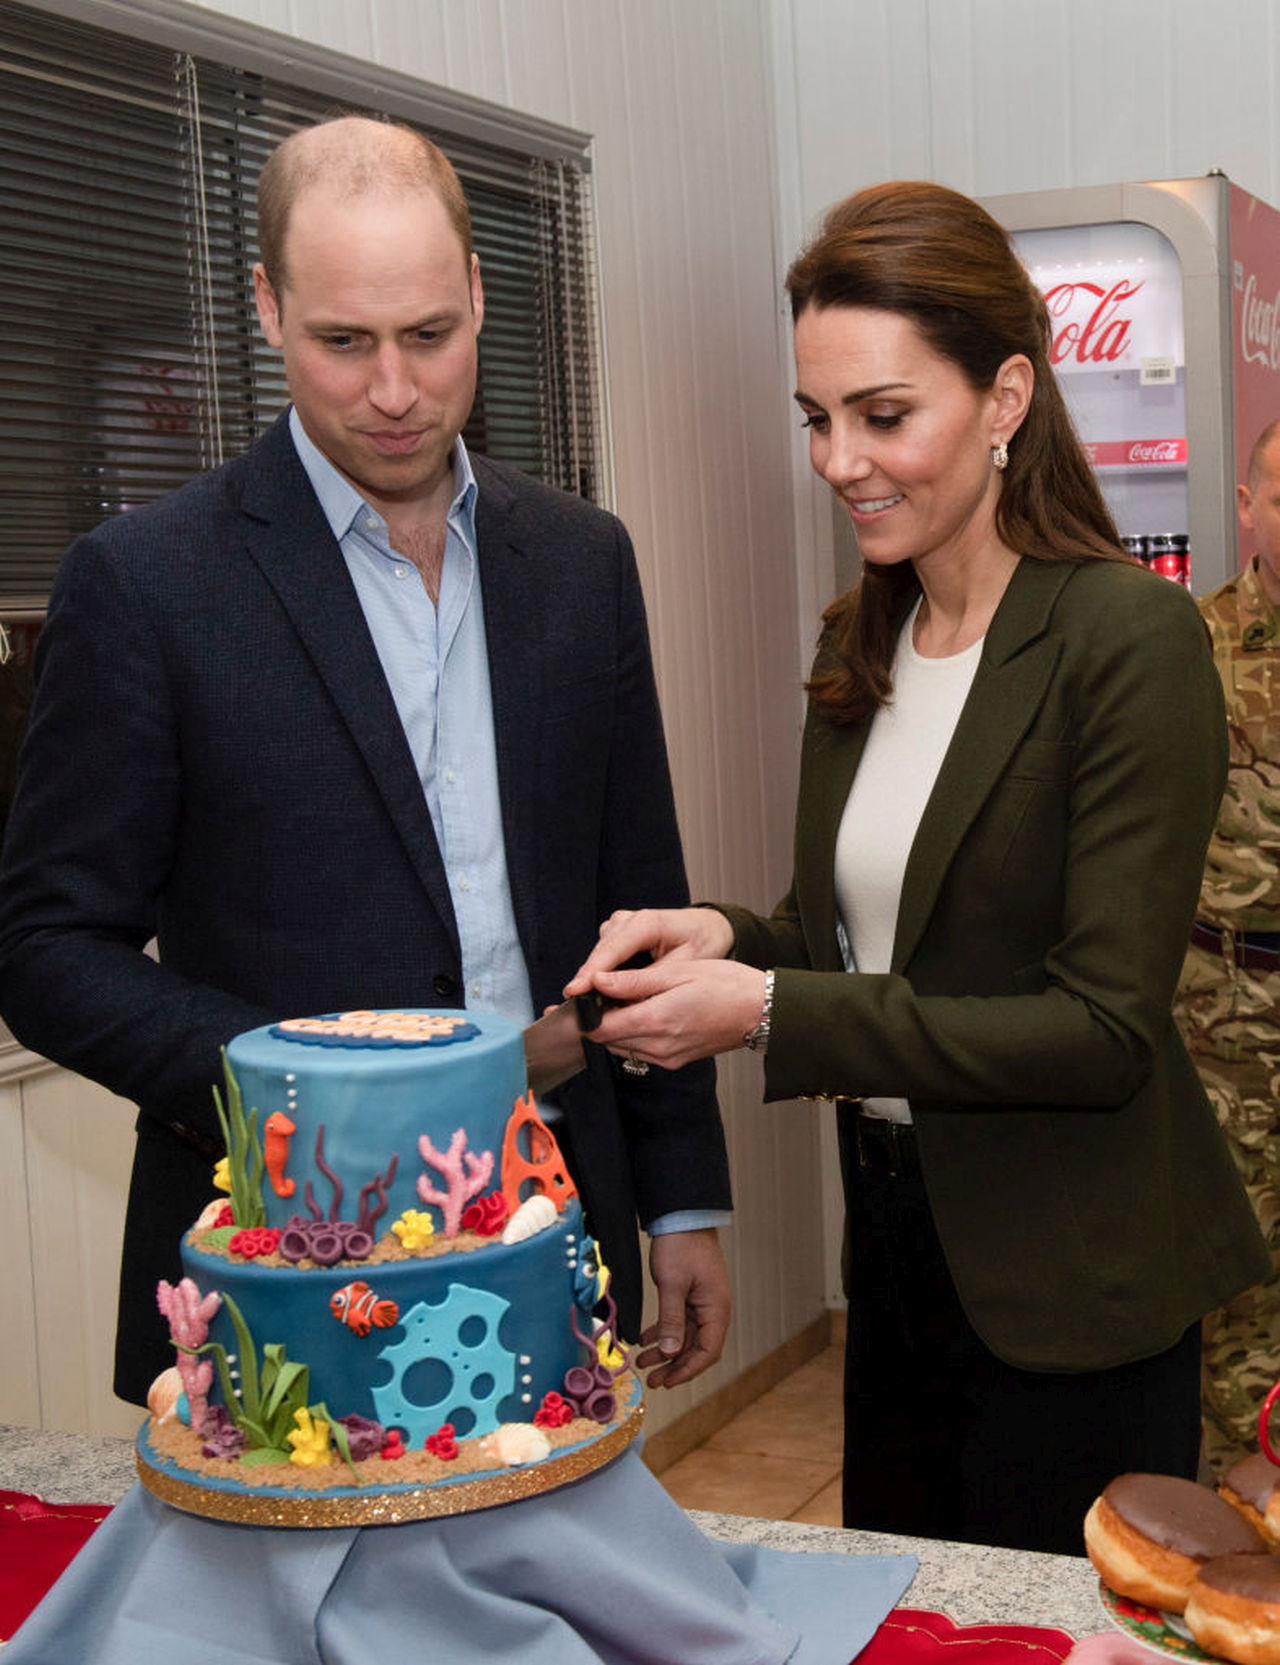 <p><strong>Тя пече торти за рождените дни на децата си</strong></p>

<p>Кейт казва, че прави тортите за рождените ден на трите си деца &ndash; принц Джордж, 9, принцеса Шарлот, 7, и принц Луис, 4. Кралската майка сподели специалната традиция, докато участва в <em>A Berry Royal Christmas </em>през 2019 г. <strong>&bdquo;Обичам да правя тортата. Превърна се в традиция да стоя будна до полунощ с невероятни количества смес за торта и глазура и правя твърде много&ldquo;</strong>, каза Кейт,<strong> &bdquo;Но на мен ми е приятно!&ldquo;</strong></p>